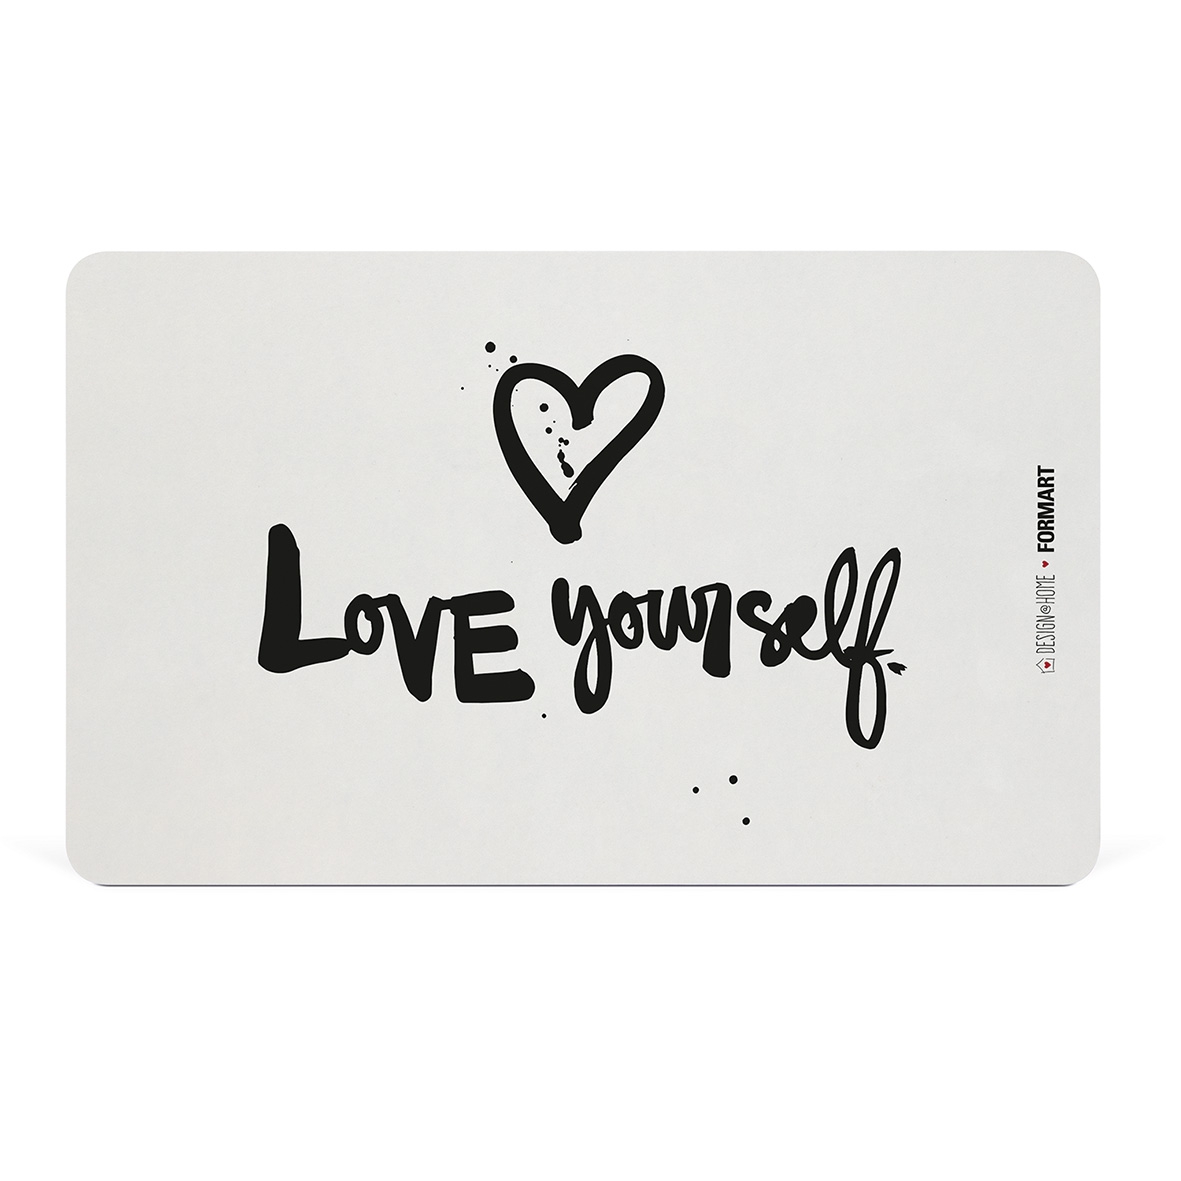 Tablero de Desayuno - Love yourself Tray D@H